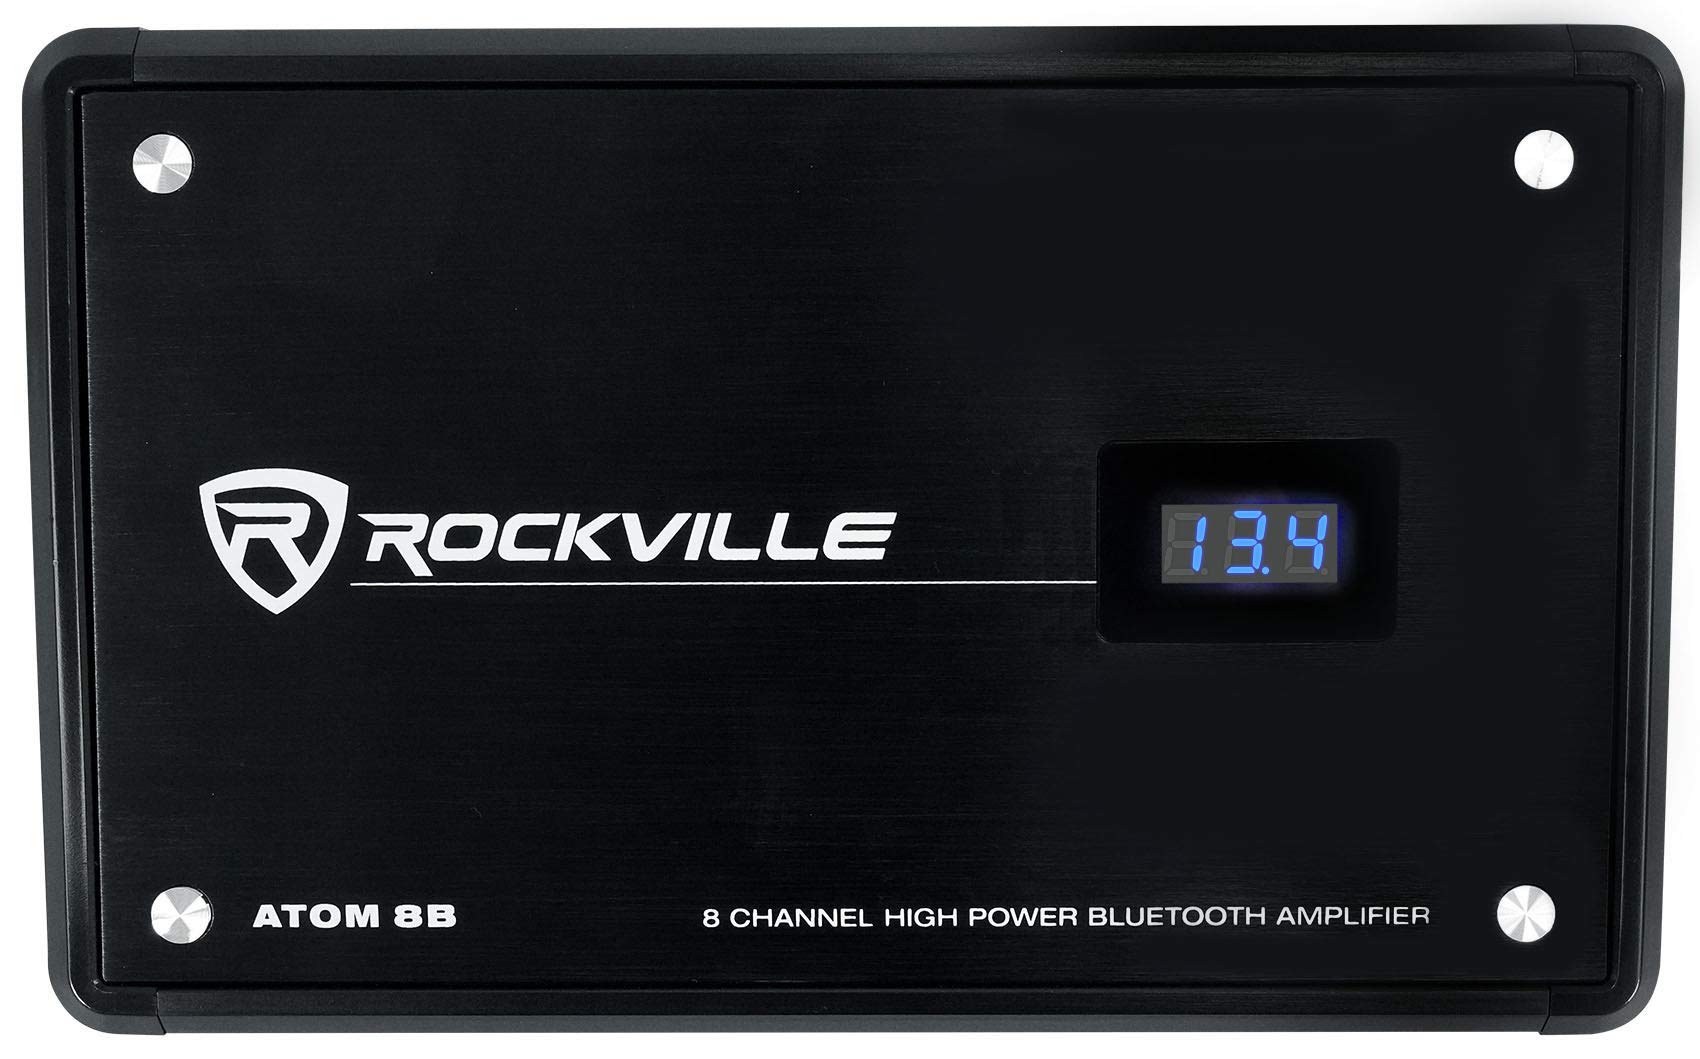 Rockville Atom 8B 8 Channel 3500 Watt Marine/Boat Amplifier Amp w/Bluetooth